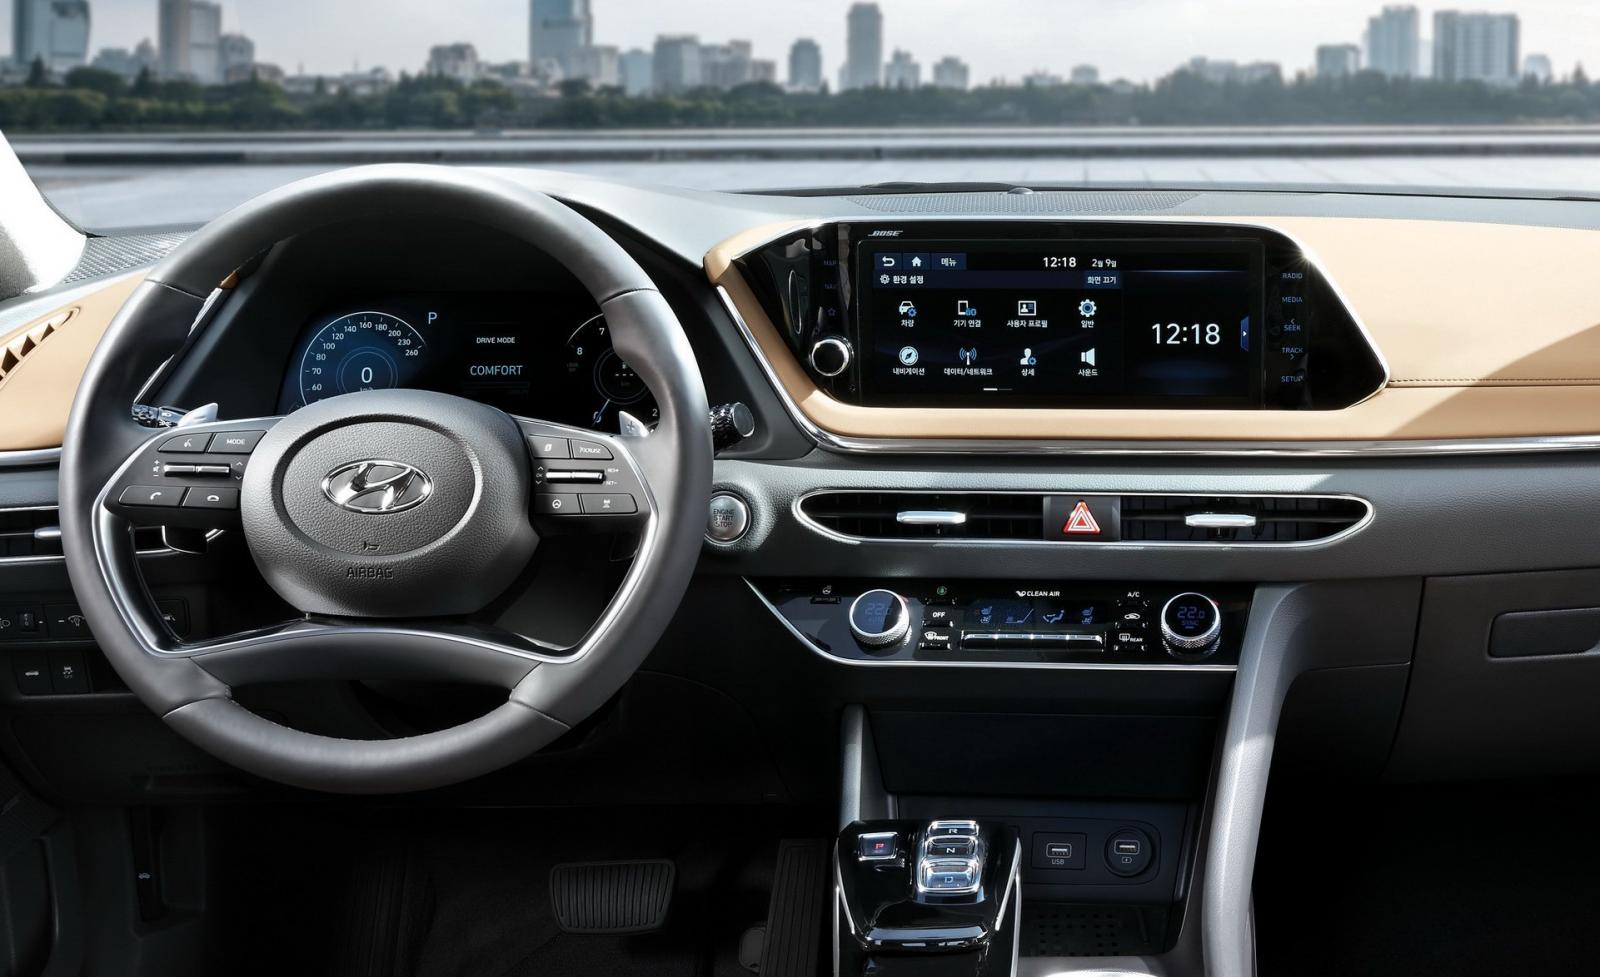 Hyundai Sonata thế hệ mới lộ ảnh "nóng" kèm thông số sơ bộ a8